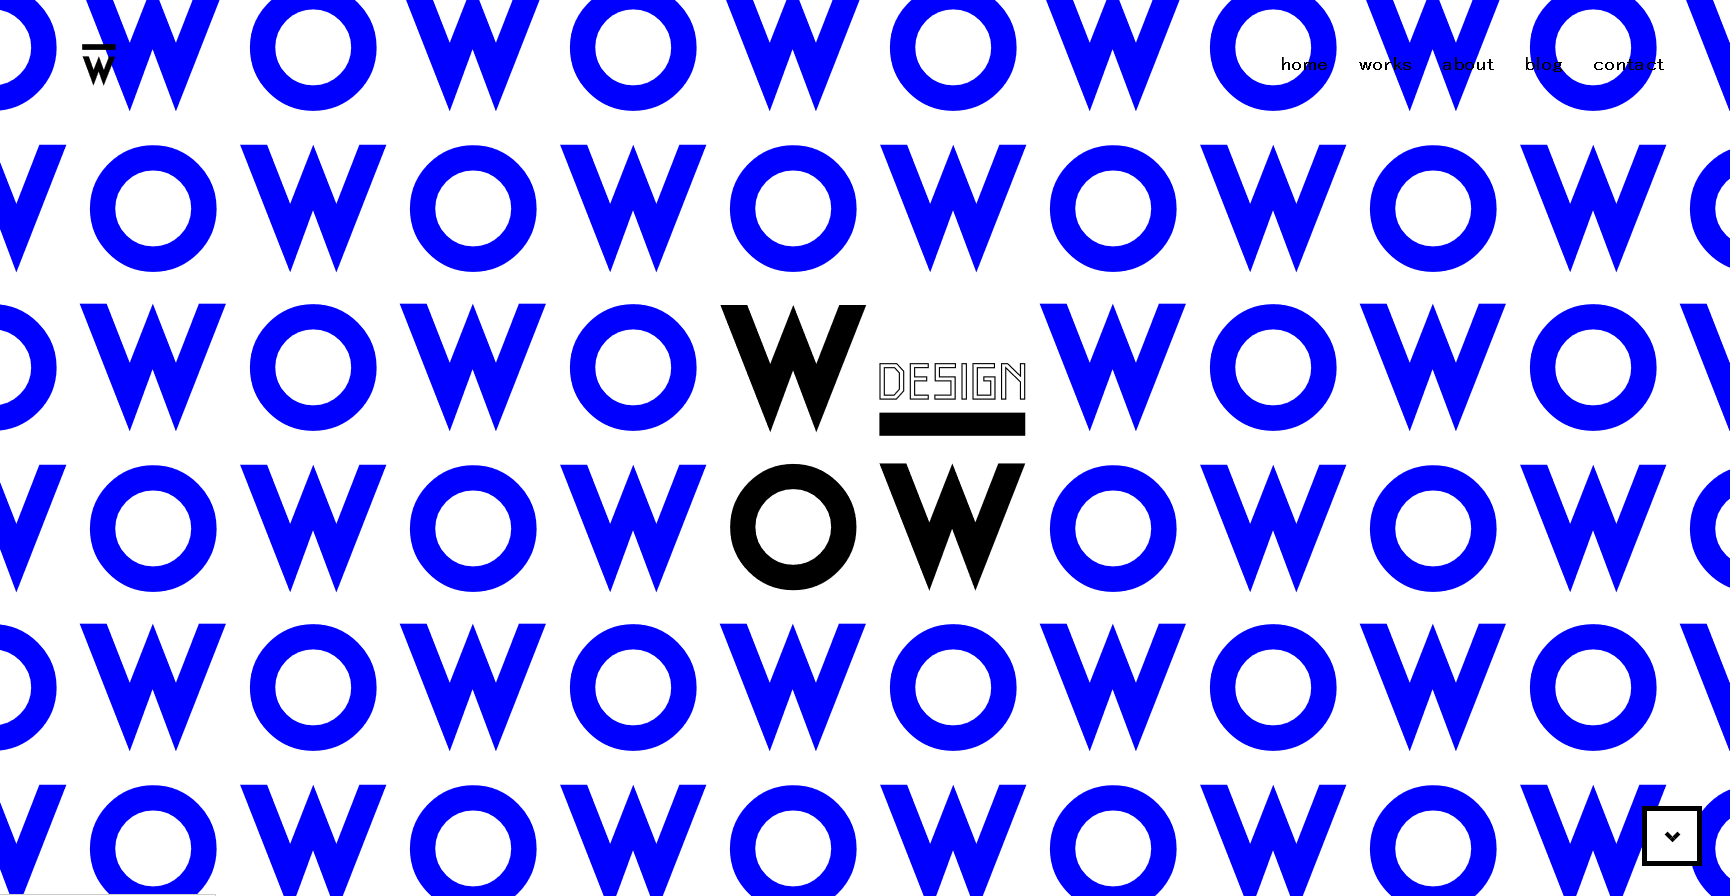 WOWS Inc.のWOWS Inc.サービス